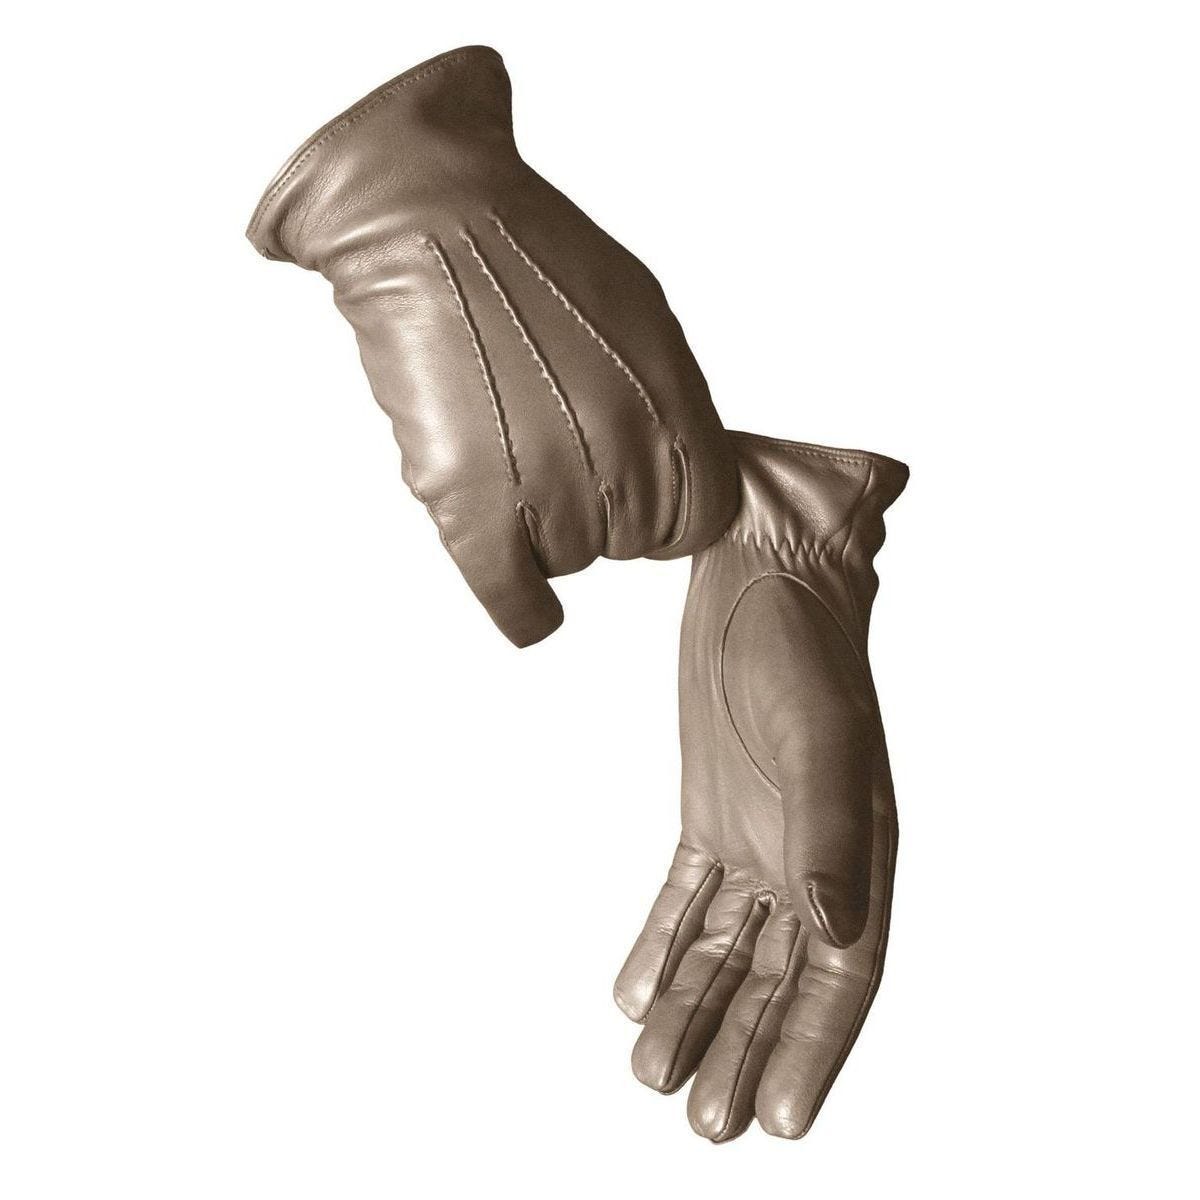 Classic gloves for men